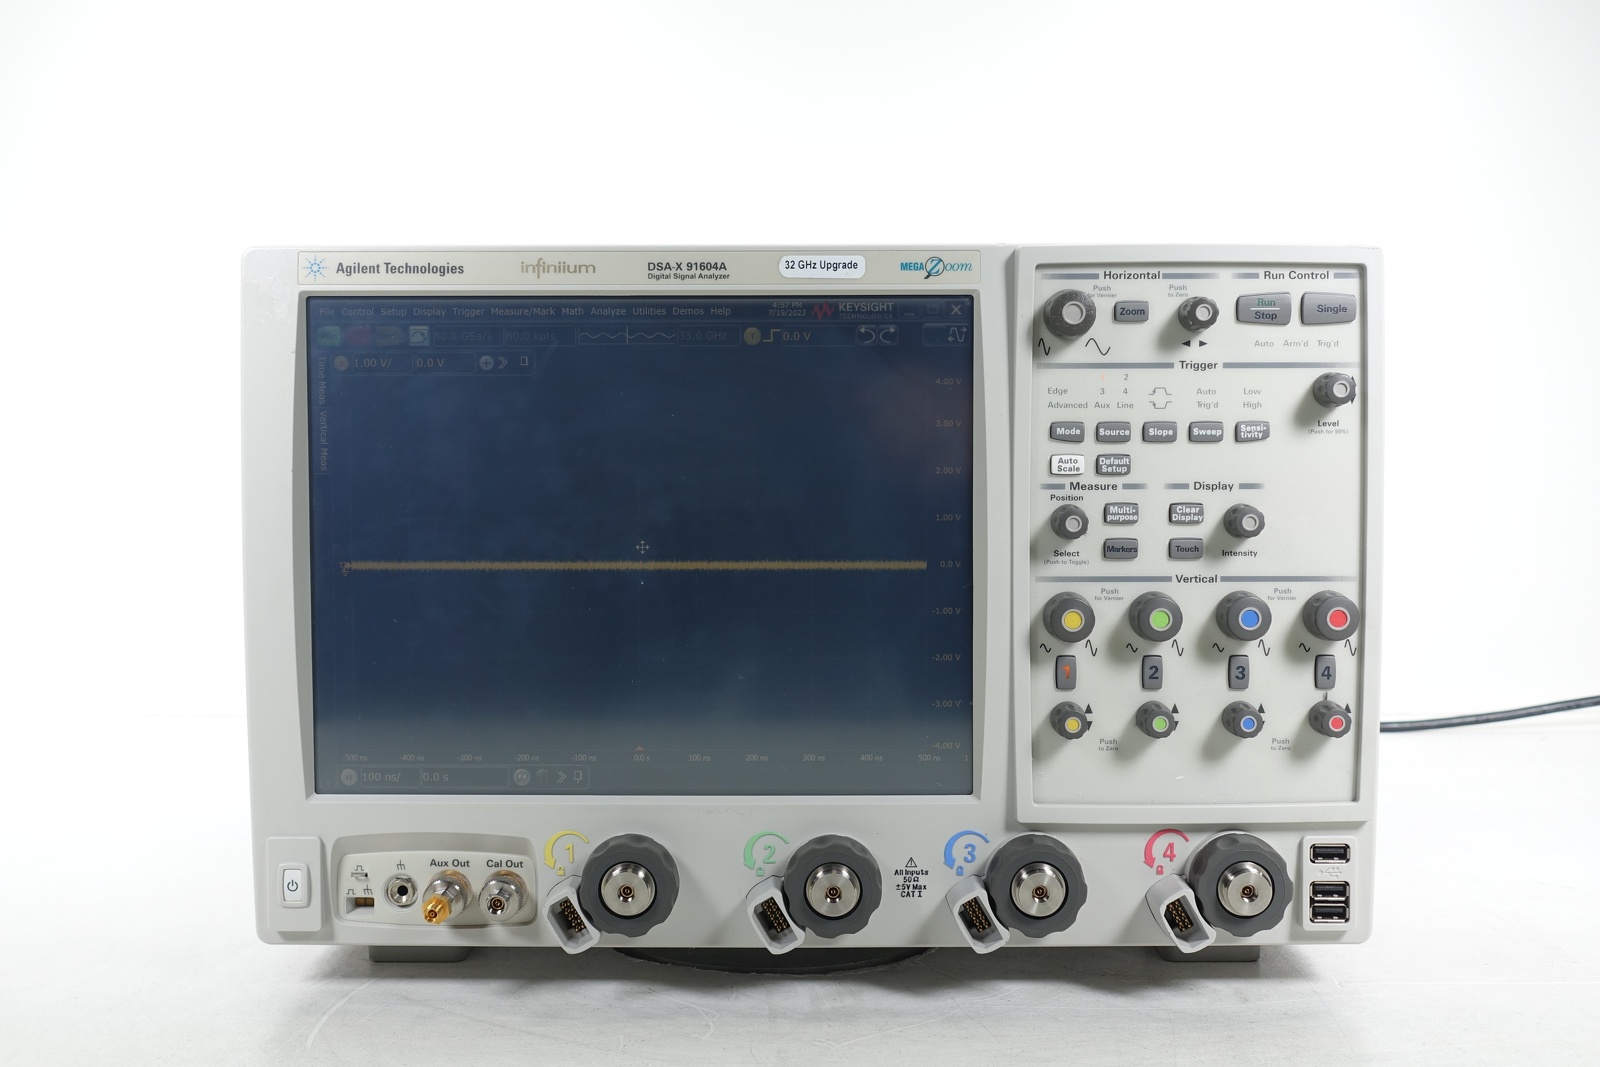 Keysight DSAX91604A Infiniium High-Performance Oscilloscope / 16 GHz / 80/40 GSa/s / 4 Channels / 50M